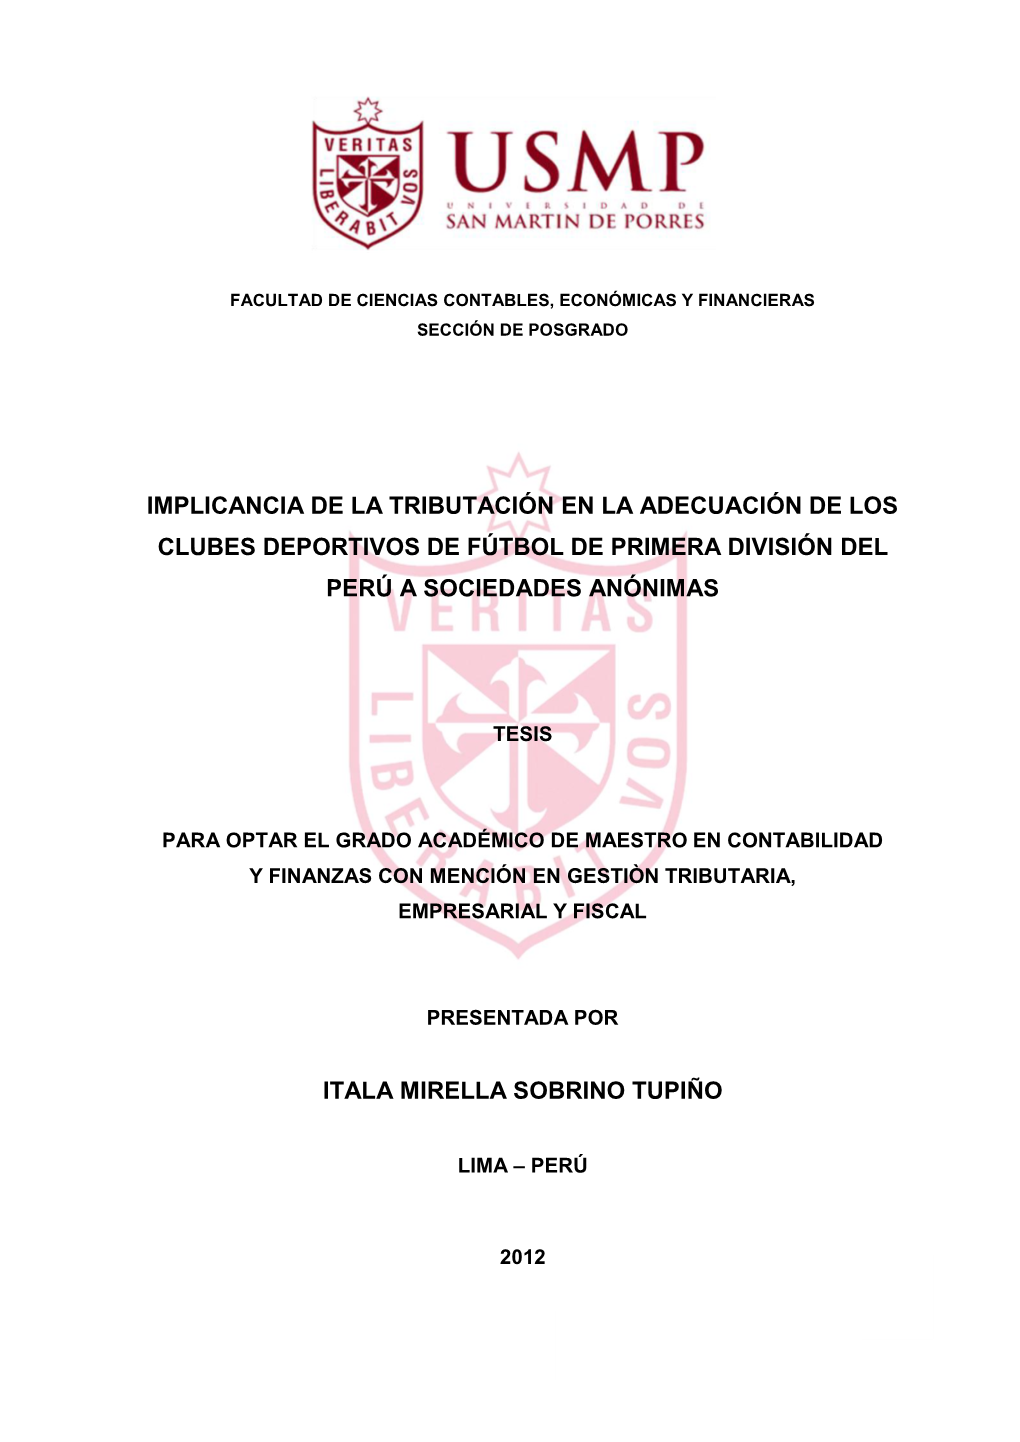 Implicancia De La Tributación En La Adecuación De Los Clubes Deportivos De Fútbol De Primera División Del Perú a Sociedades Anónimas